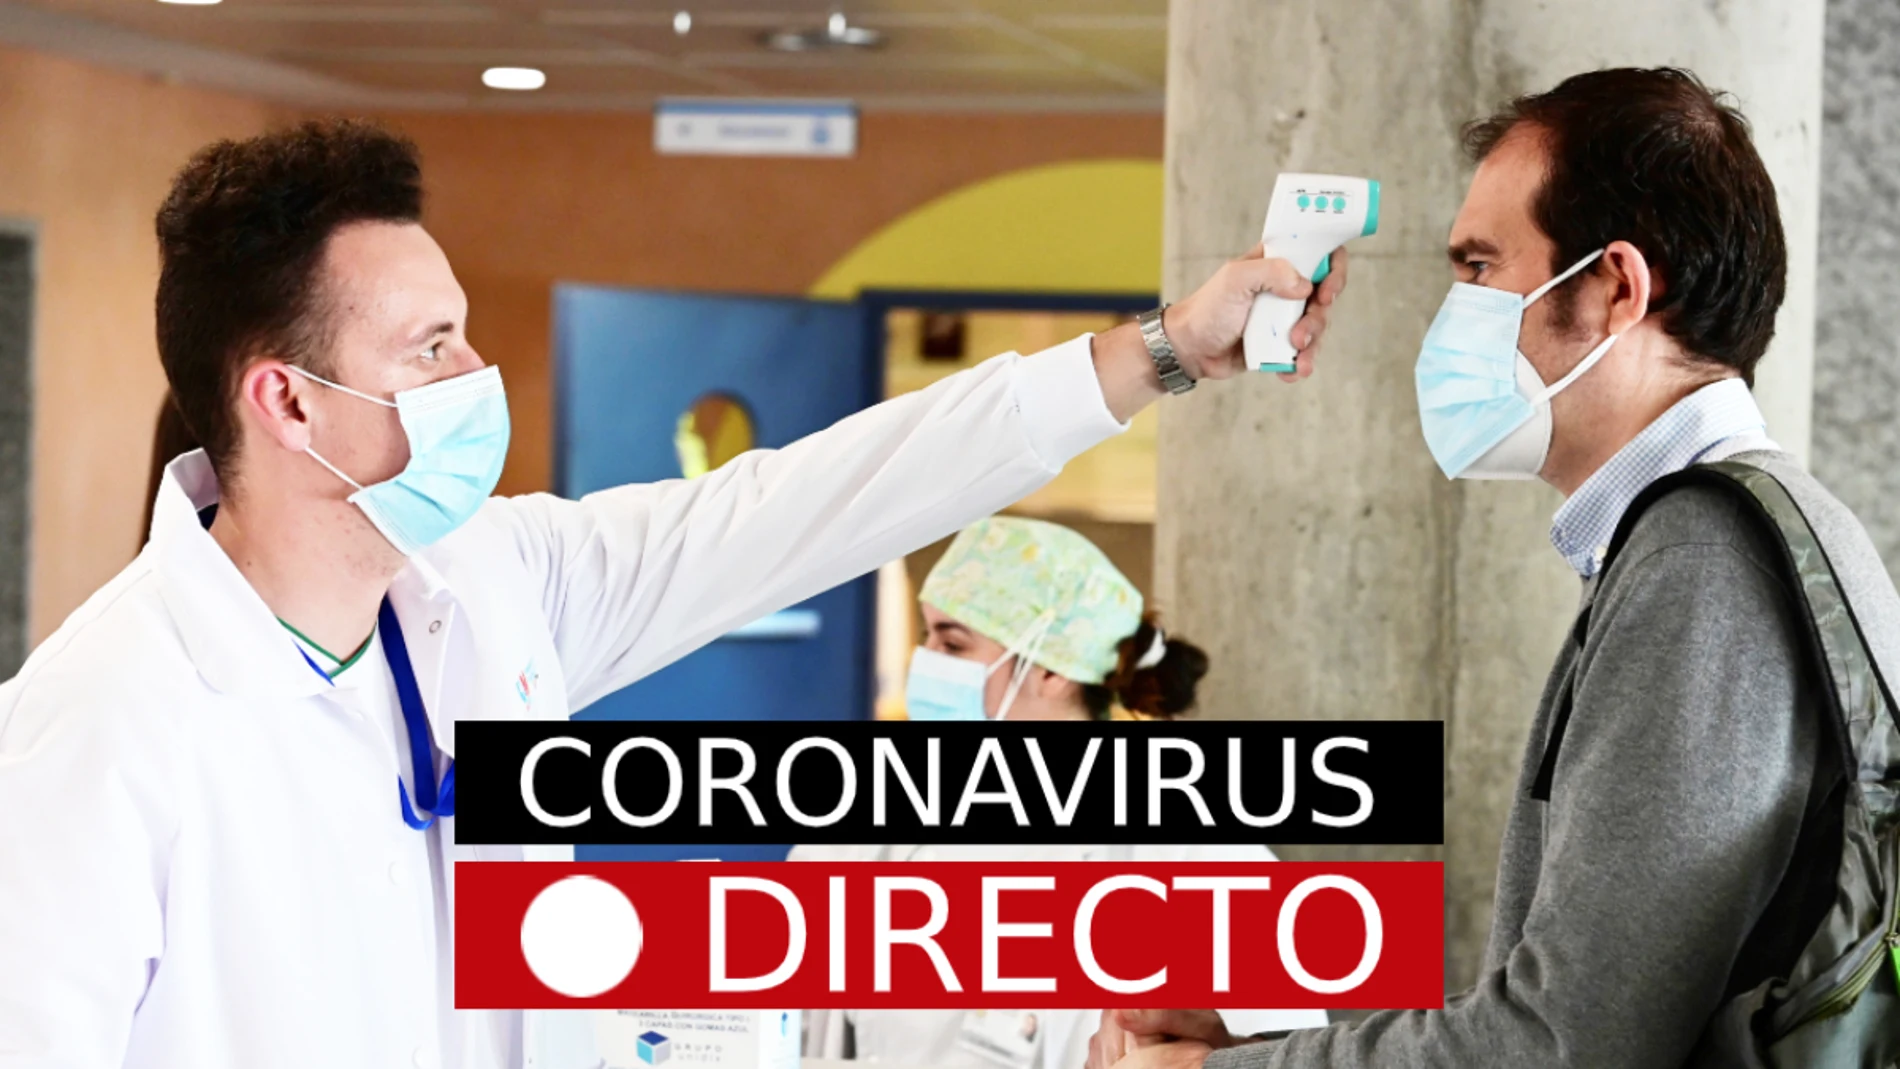 Coronavirus España hoy: Noticias de última hora de Madrid y nuevos casos sobre el COVID-19, en directo